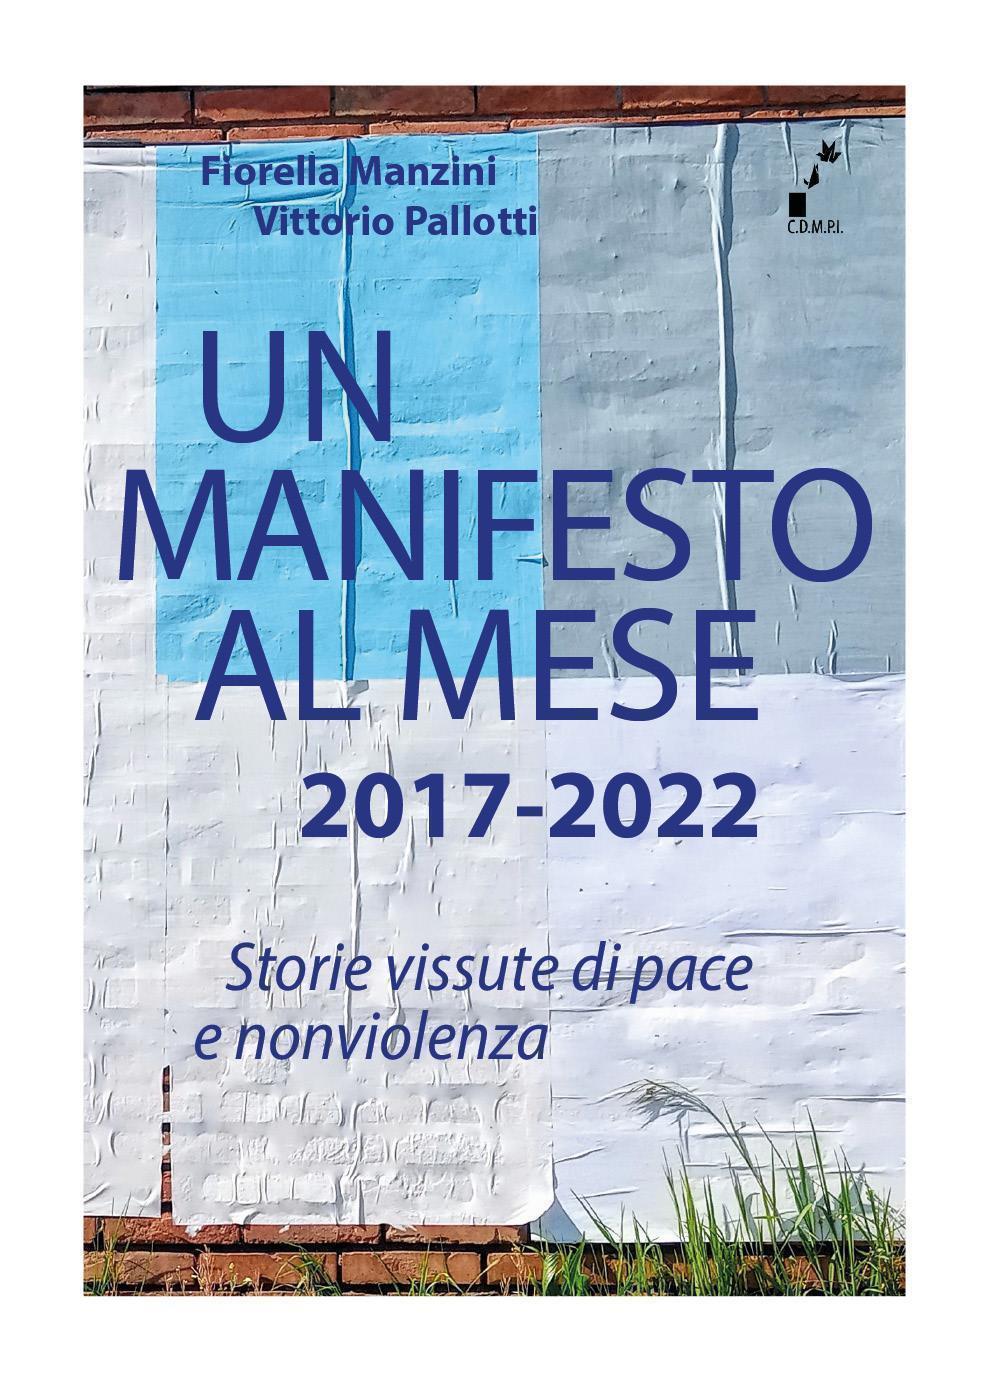 Un manifesto al mese 2017-2022